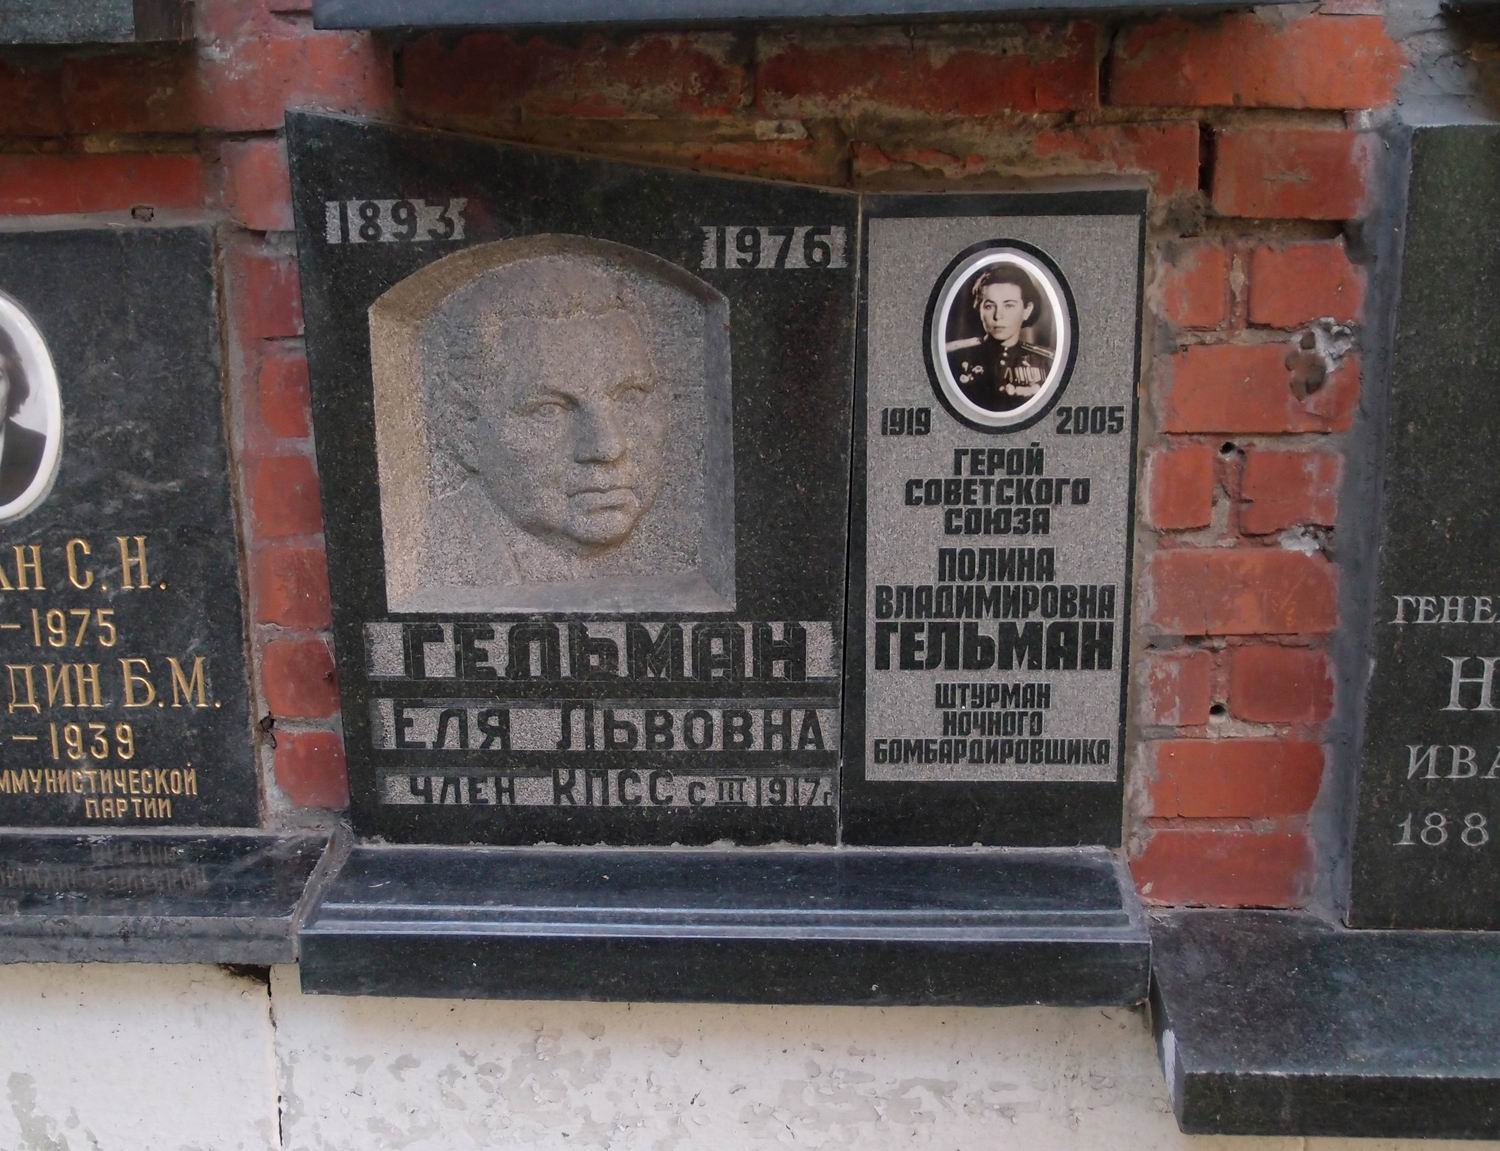 Плита на нише Гельман П.В. (1919-2005), на Новодевичьем кладбище (колумбарий [134]-37-4).